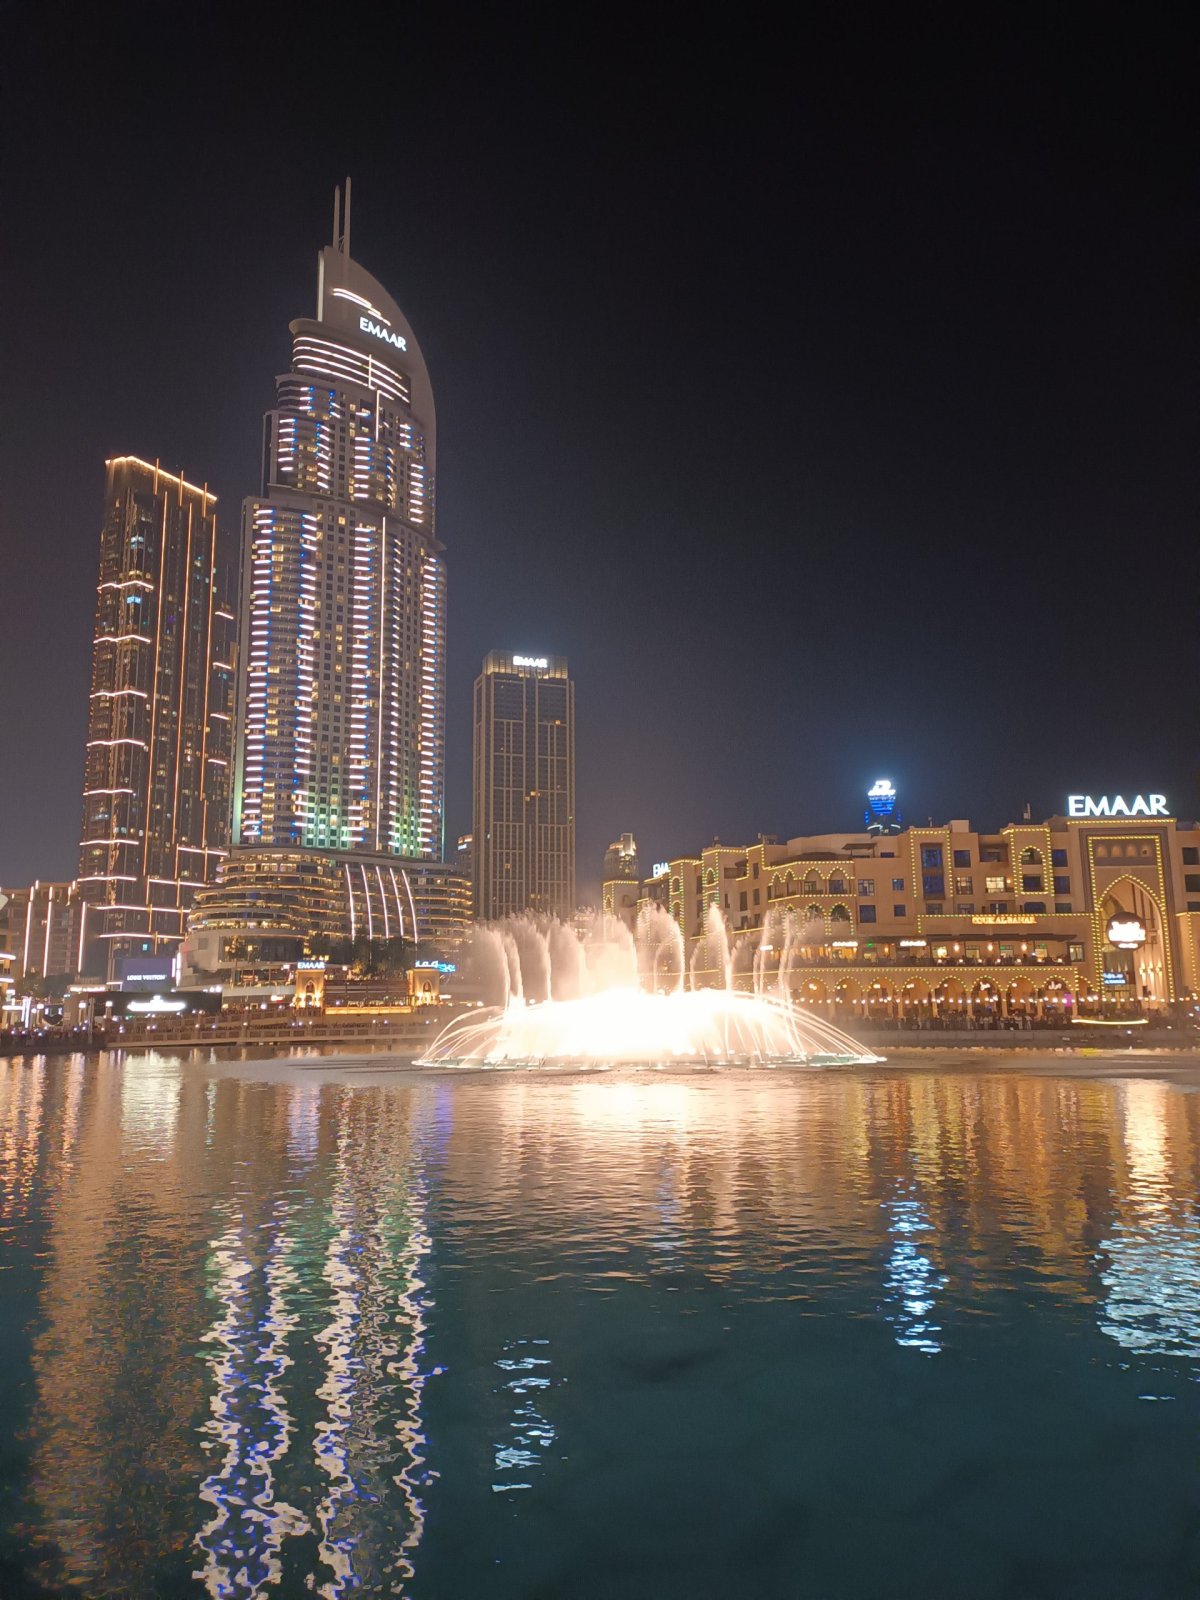 Dubajská fontána "v akci"